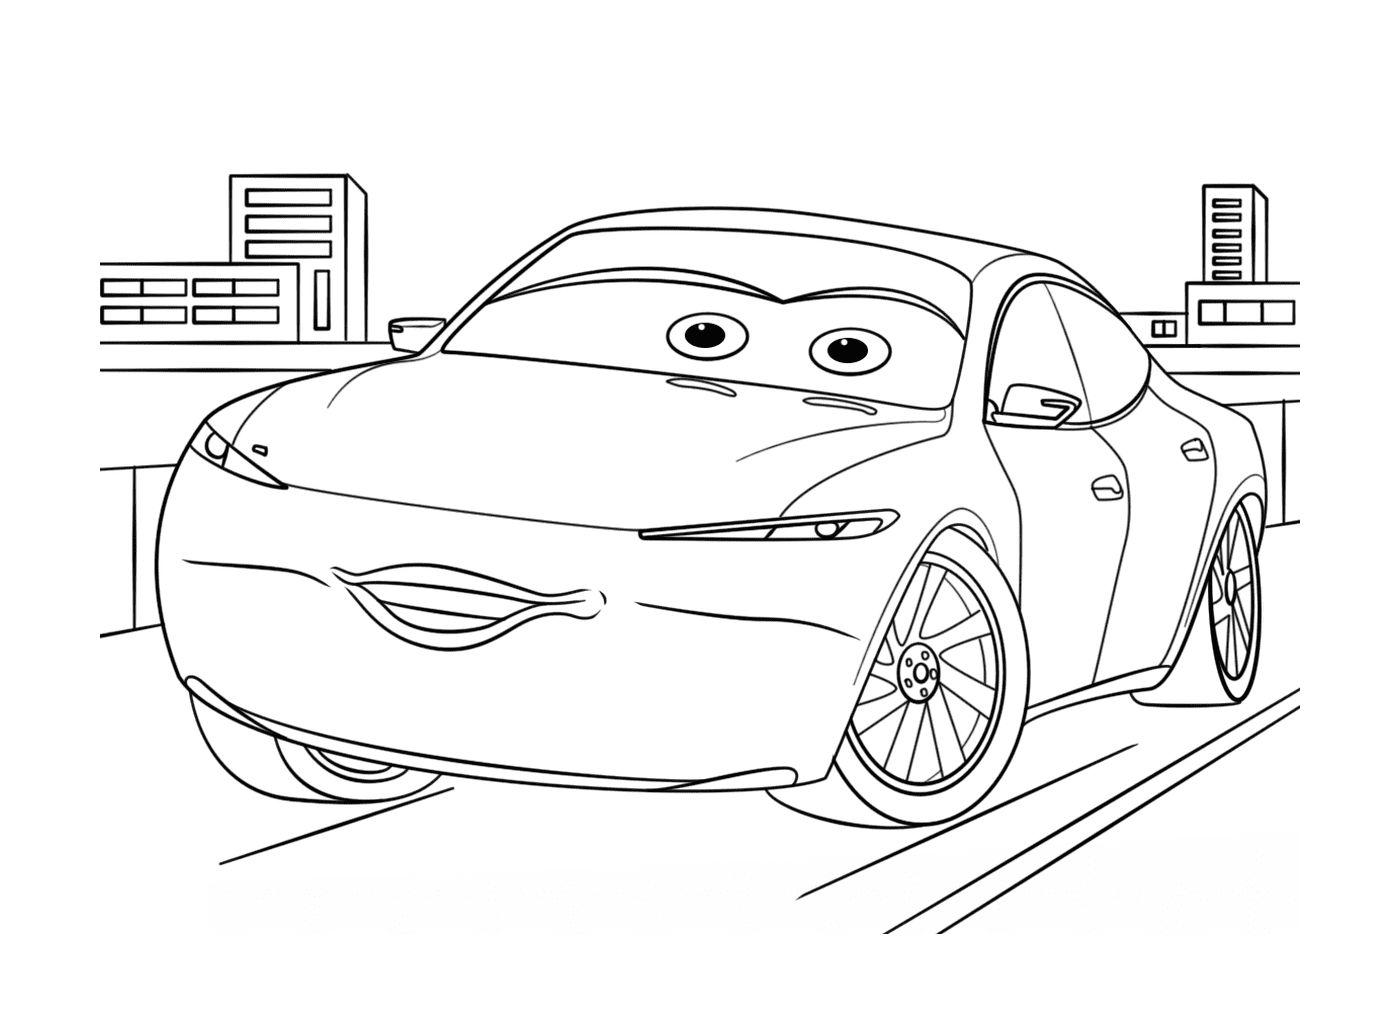  Un coche con los ojos dibujados en él 